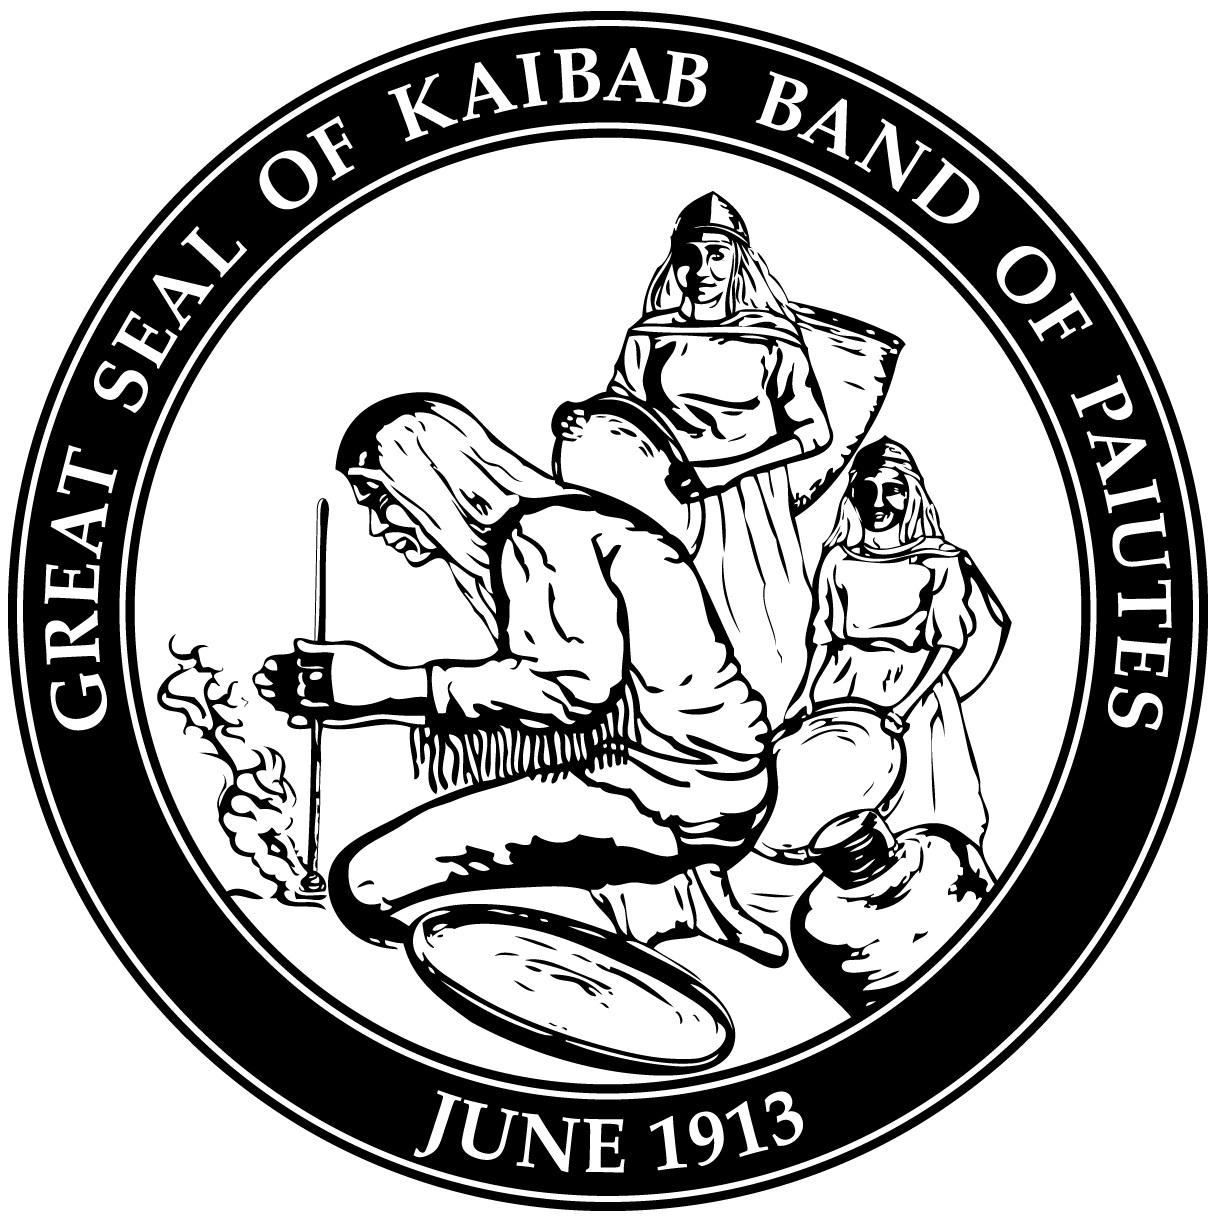 kaibab band of paiute indians tribal seal